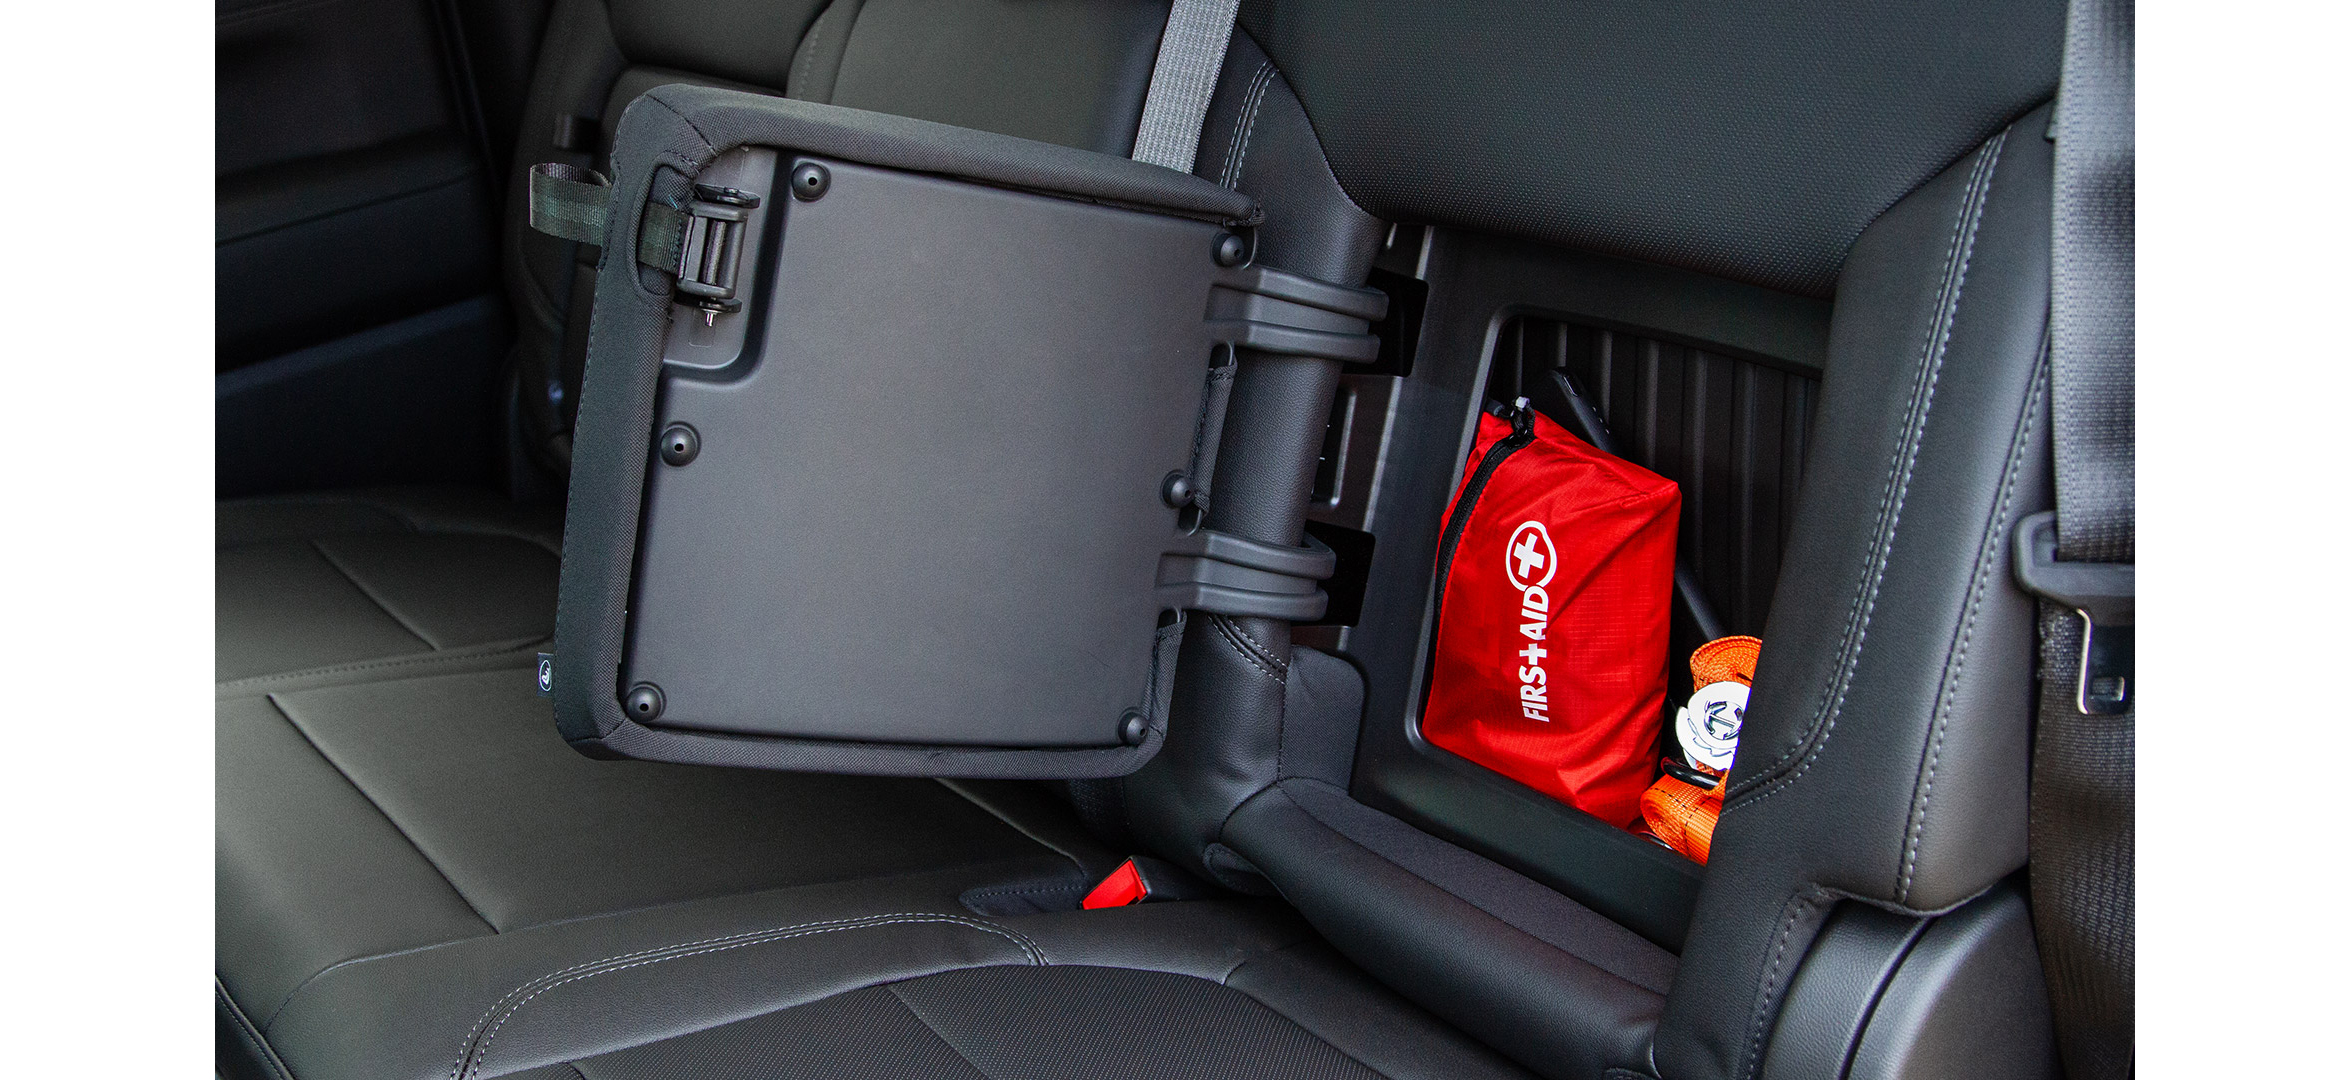 design-hidden-backseat-compartment-silverado_parallax